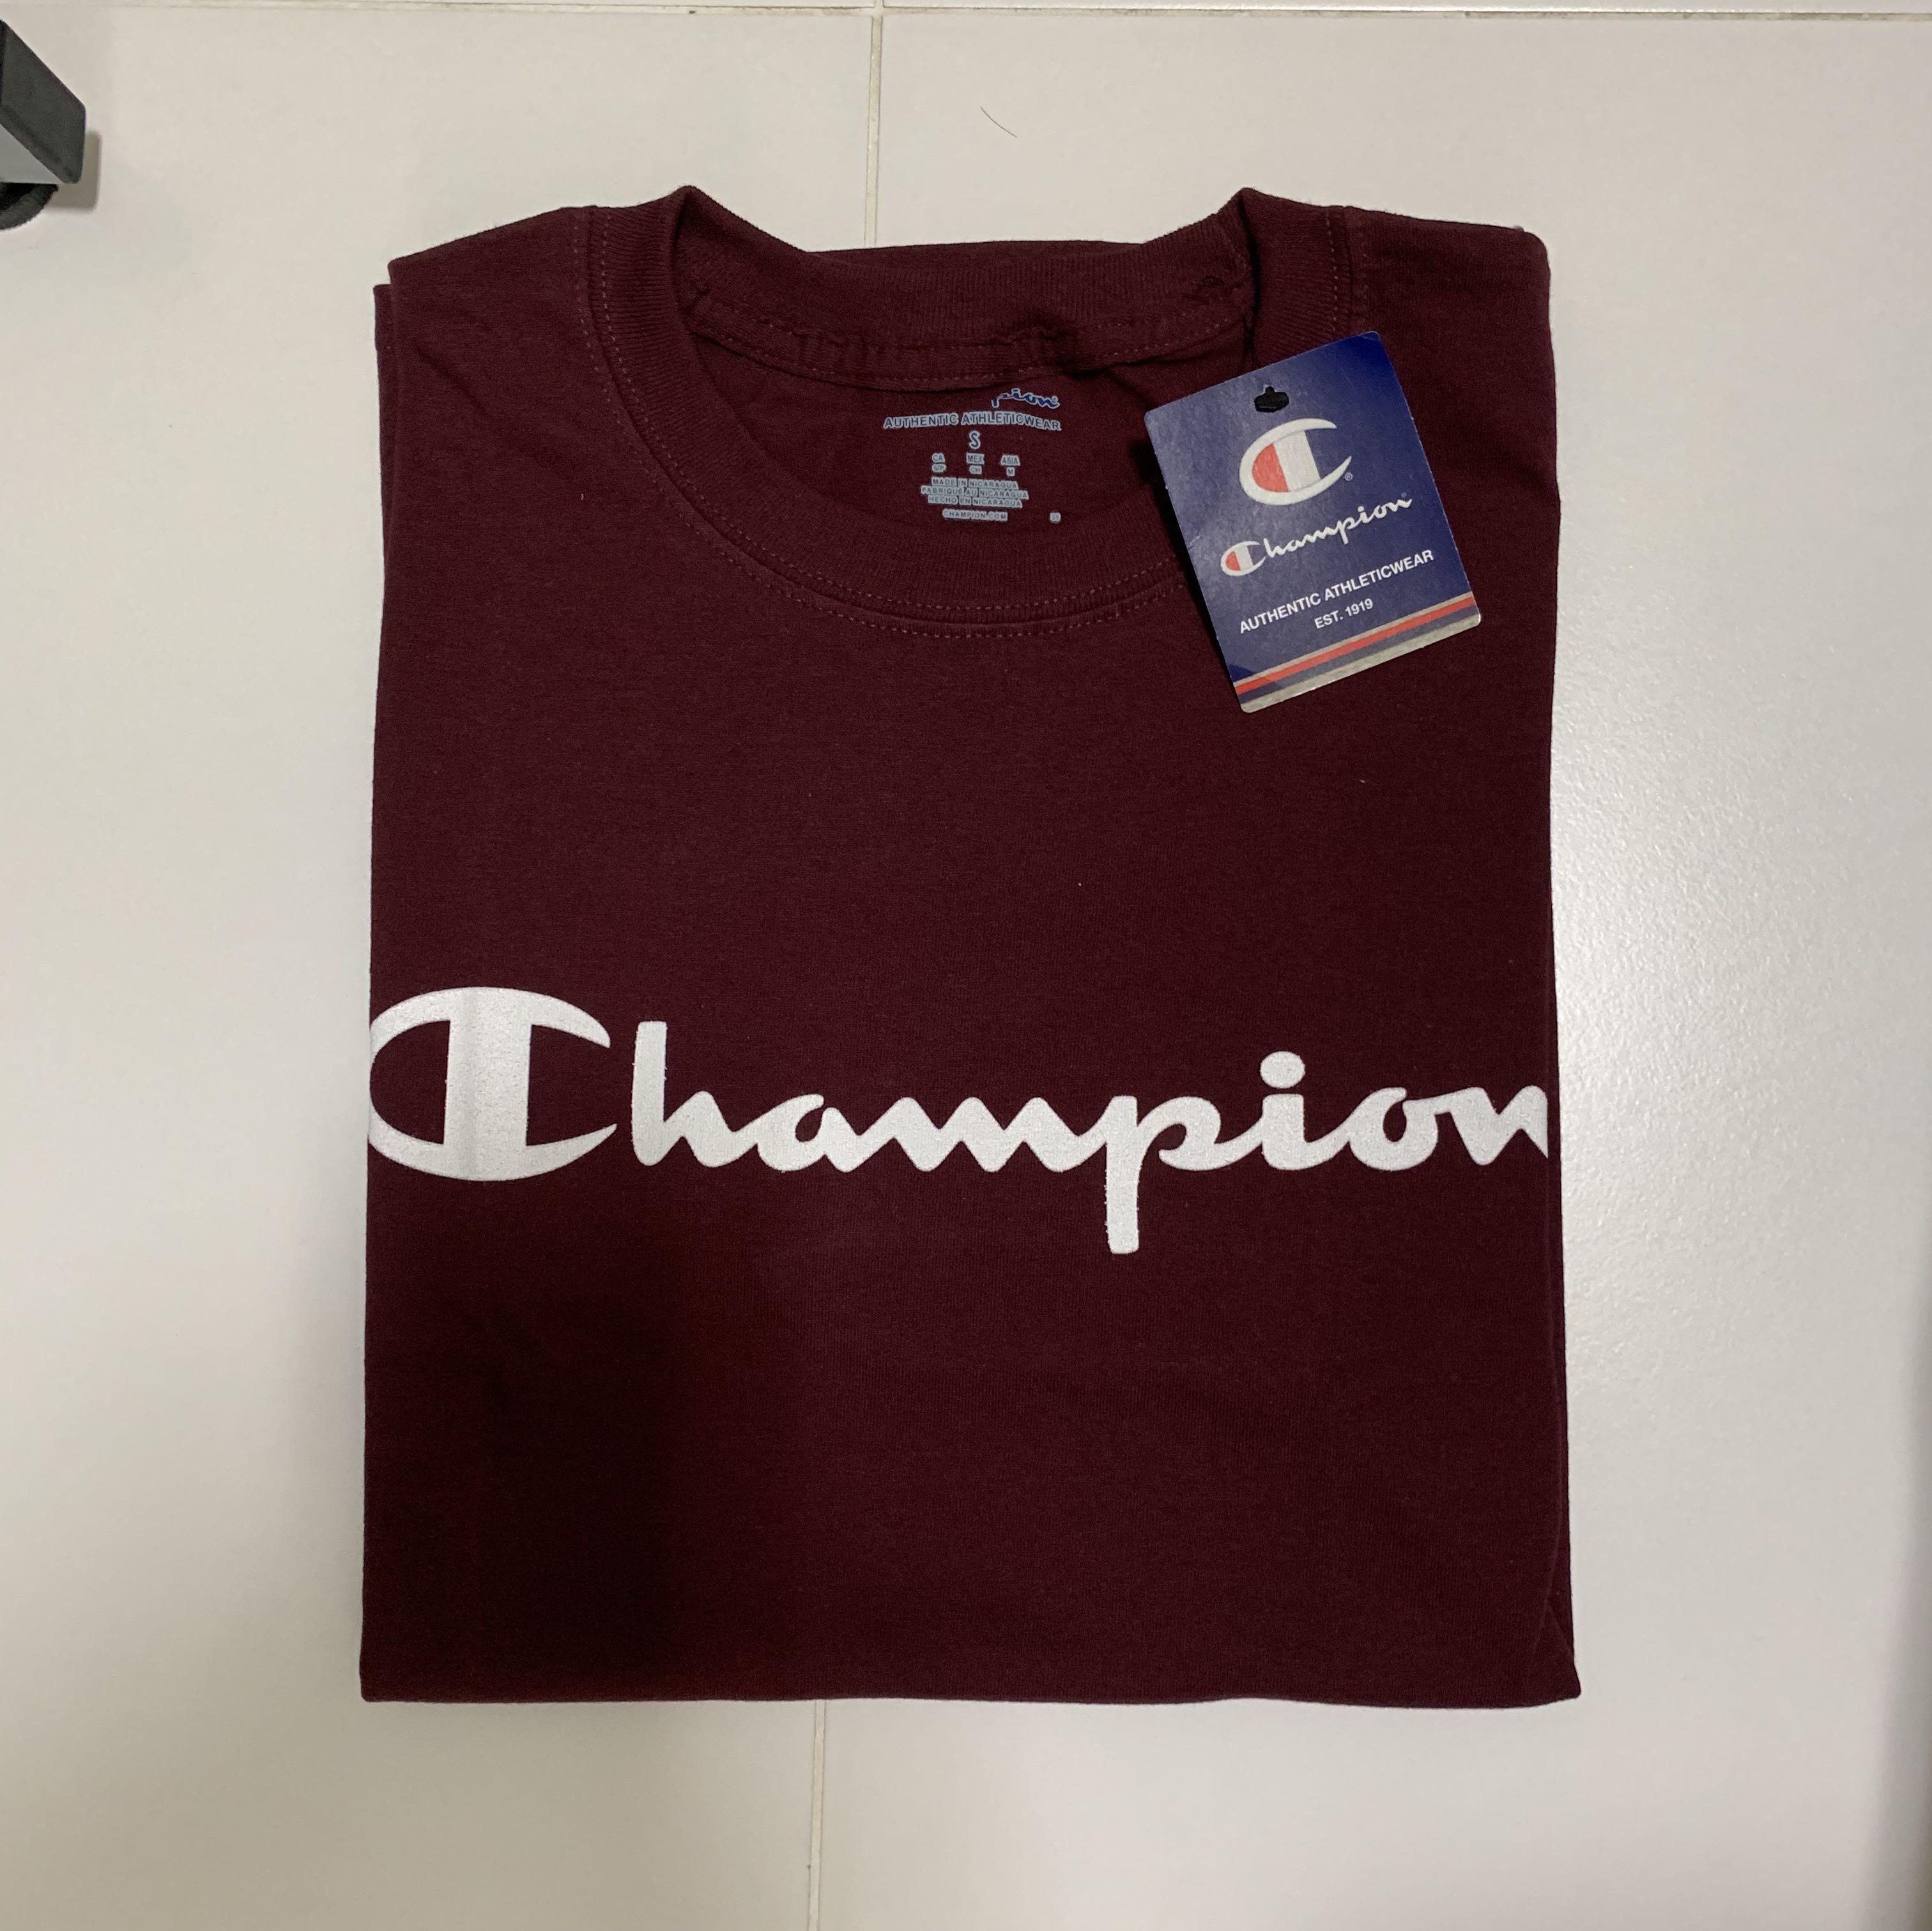 real and fake champion shirt